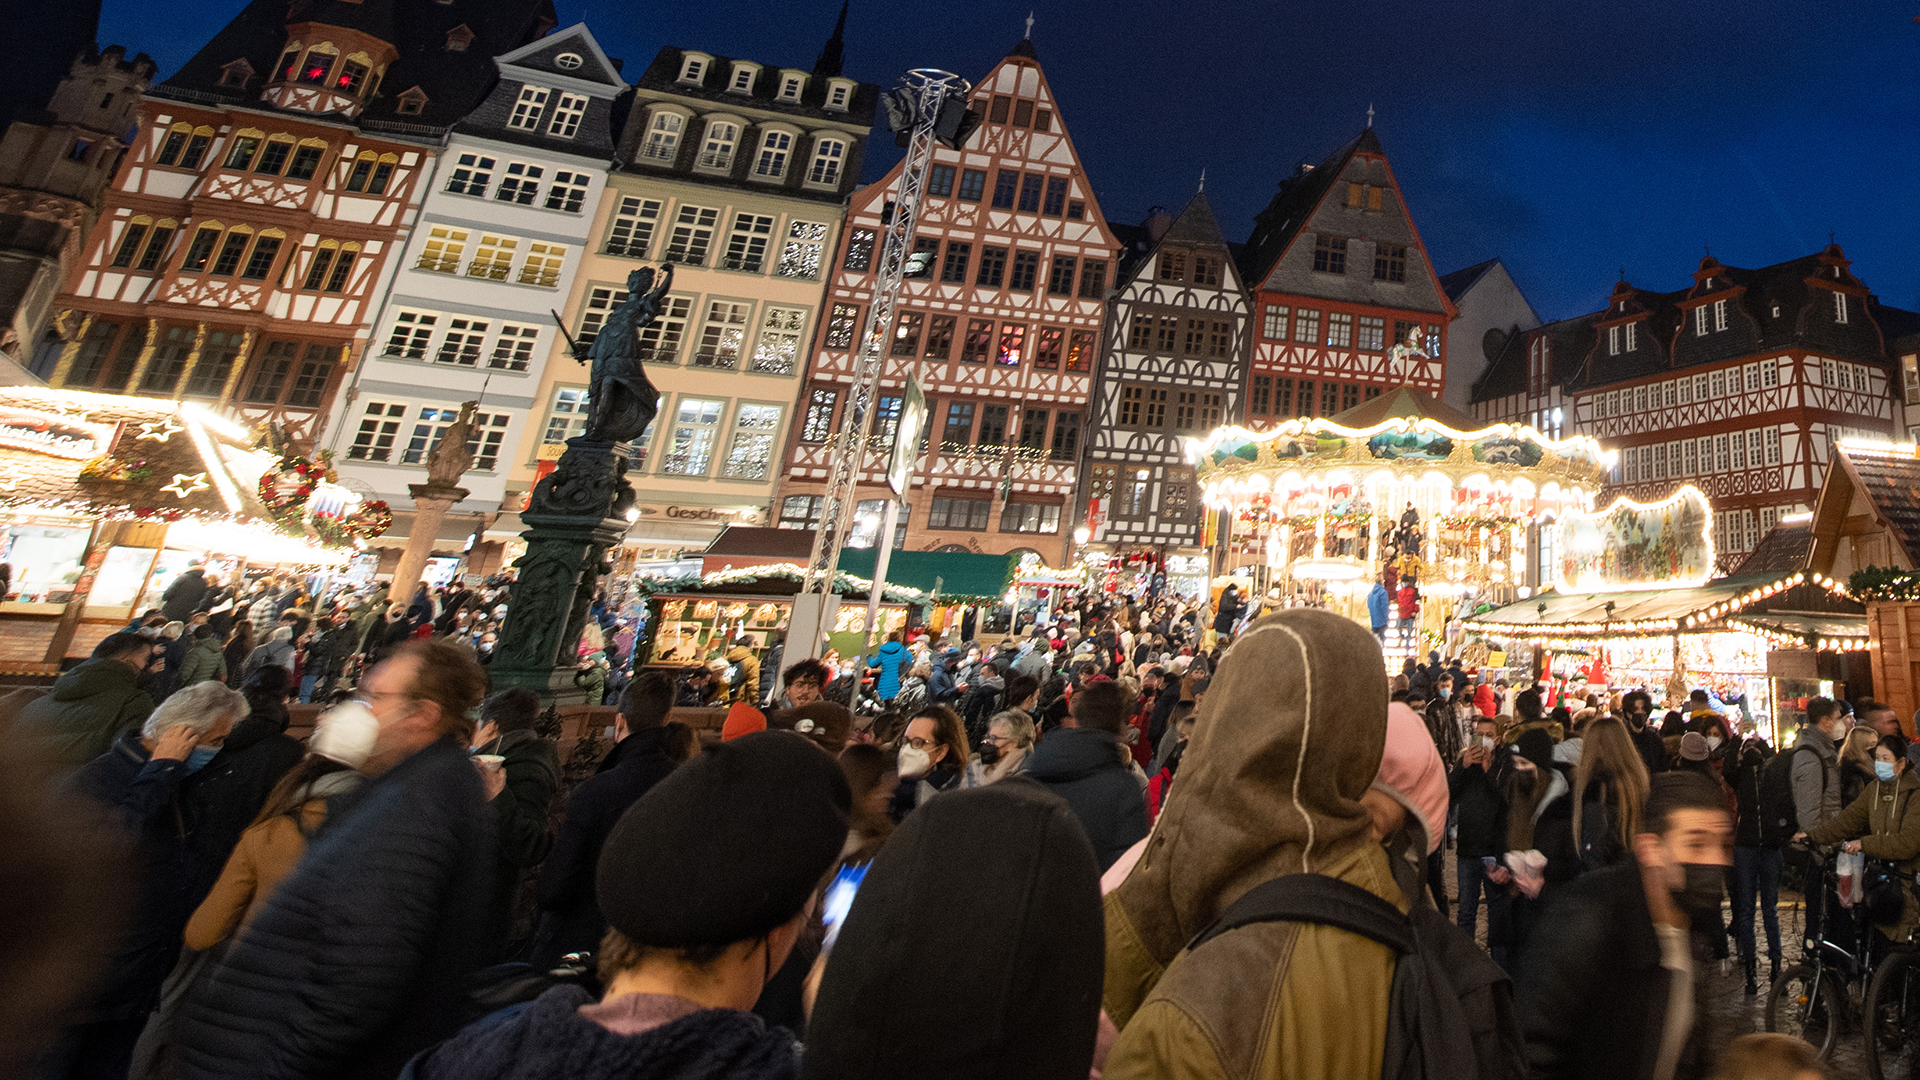  Besucher auf dem Weihnachtsmarkt auf dem Römerberg in Frankfurt am Main. | dpa